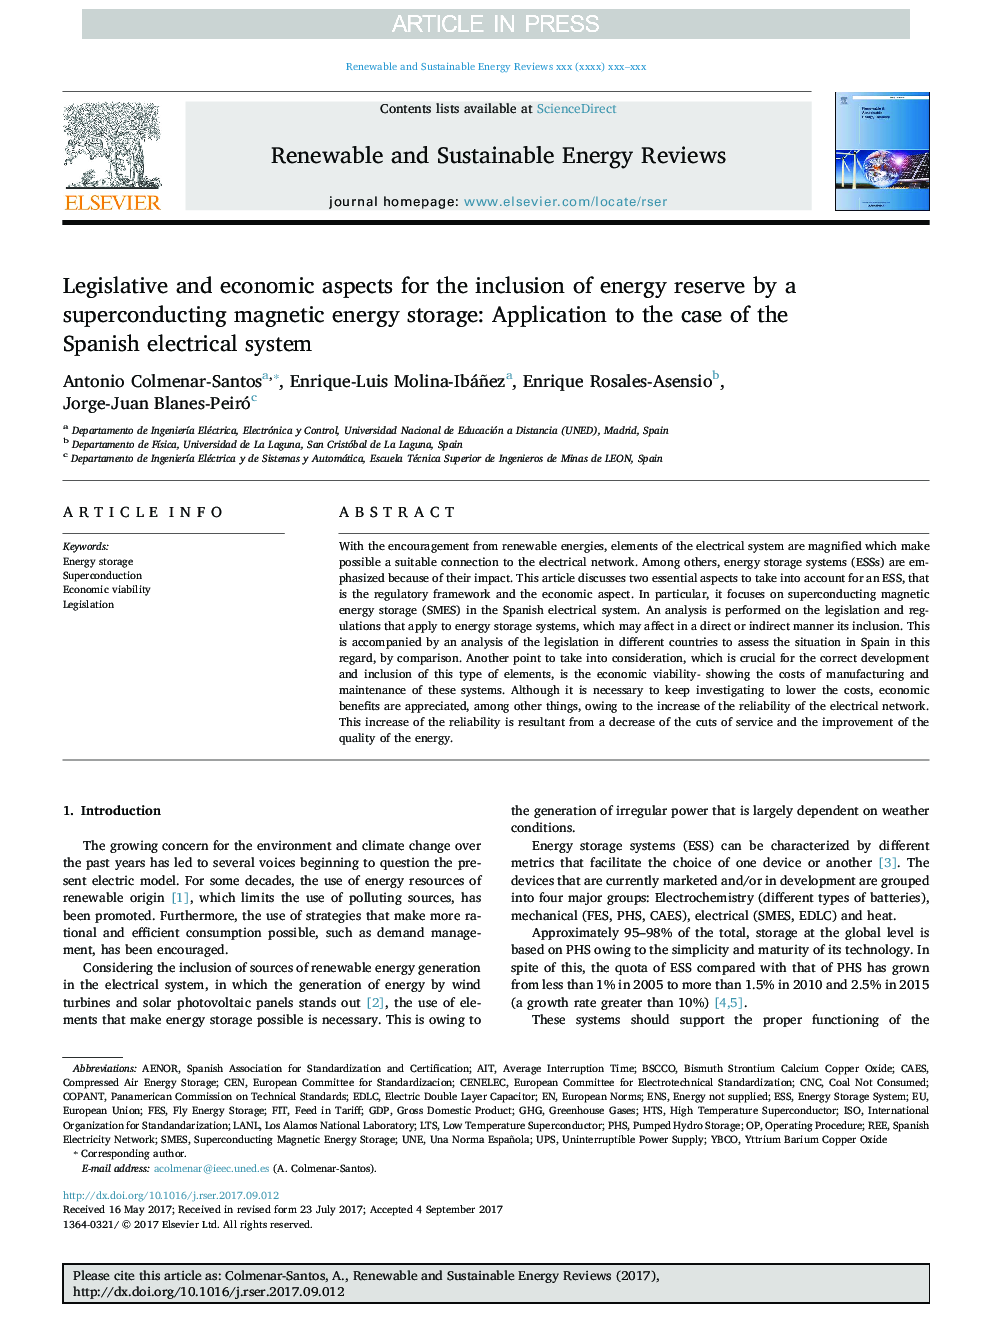 جنبه های قانونی و اقتصادی برای ورود ذخیره انرژی توسط ذخیره انرژی مغناطیسی ابررسانایی: کاربرد در مورد سیستم الکتریکی اسپانیا 